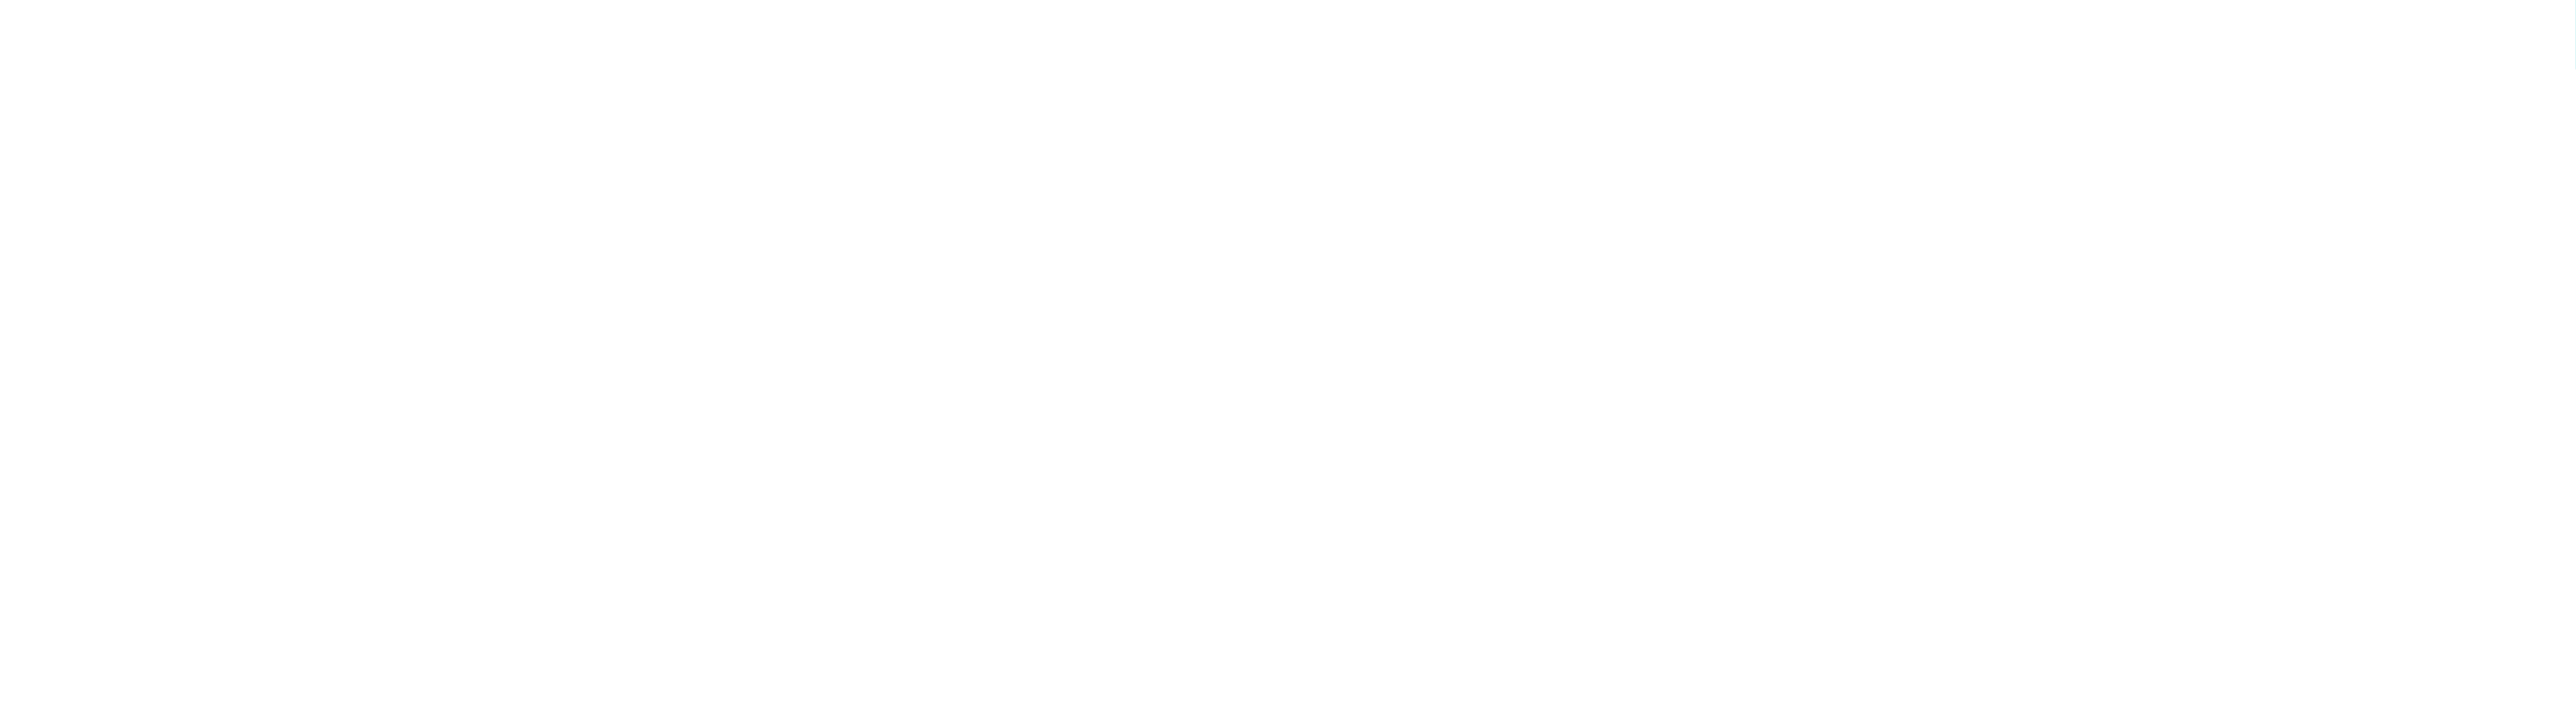 لوستر 4 شعله سقفی  مدل مارپیچ کد 1324 در چهار رنگ سفید مشکی استیل بژ-قابلیت تنظیم ارتفاع-ساخت ایران-جنس بدنه آلومینیوم دایکاست آنادایز 1324 لوستر سقفی مارپیچ:به صورت 4 شعله - رنگ ب